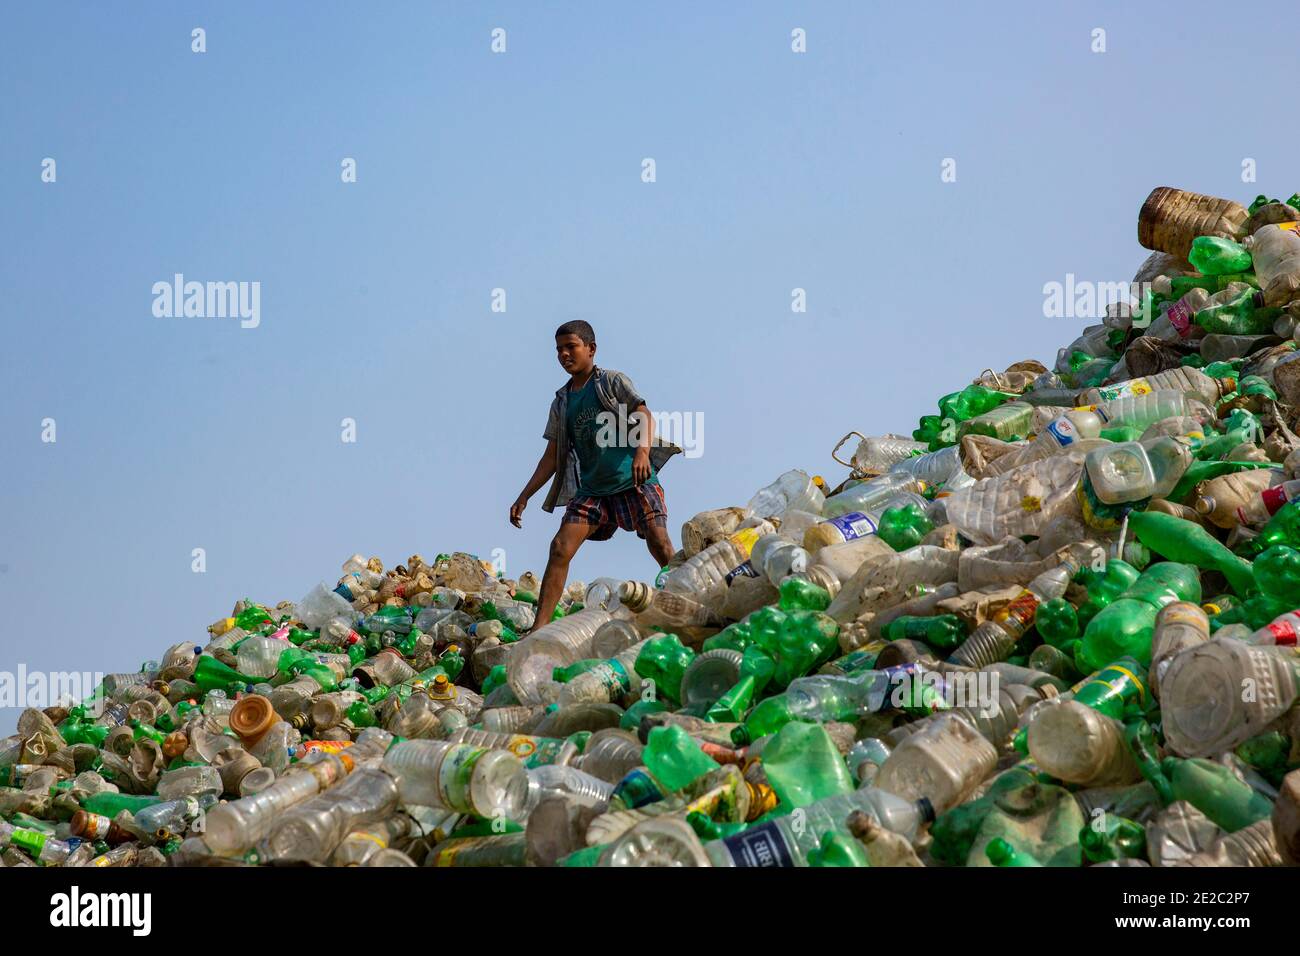 Bouteilles en plastique recueillies pour recyclage à Brahmanbaria, Bangladesh. Banque D'Images